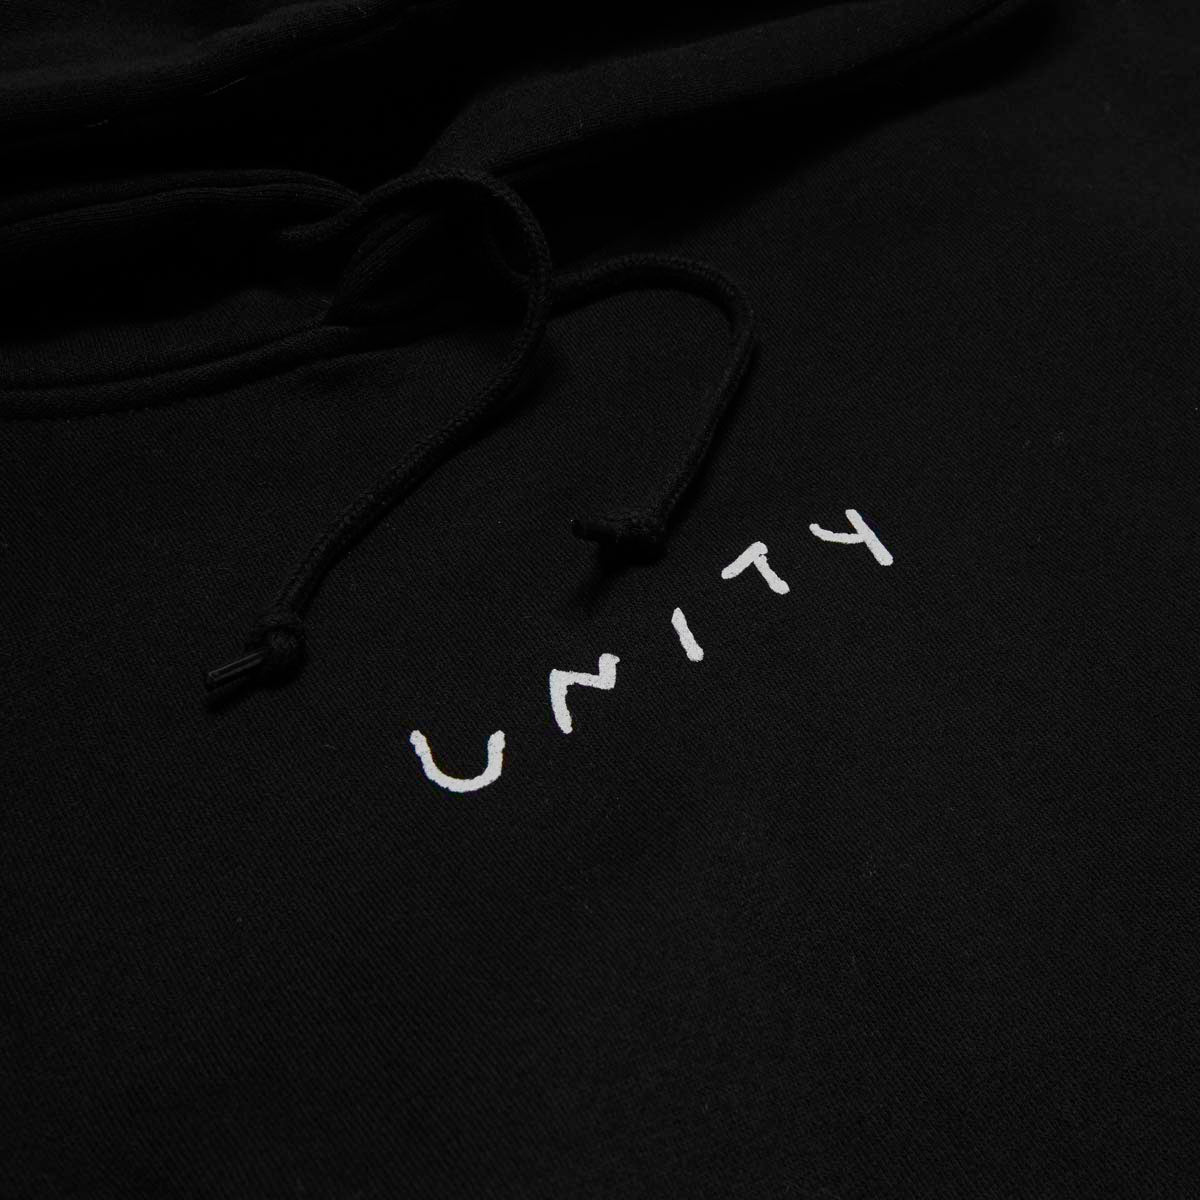 Unity Banners Hoodie - Black/Grey image 3